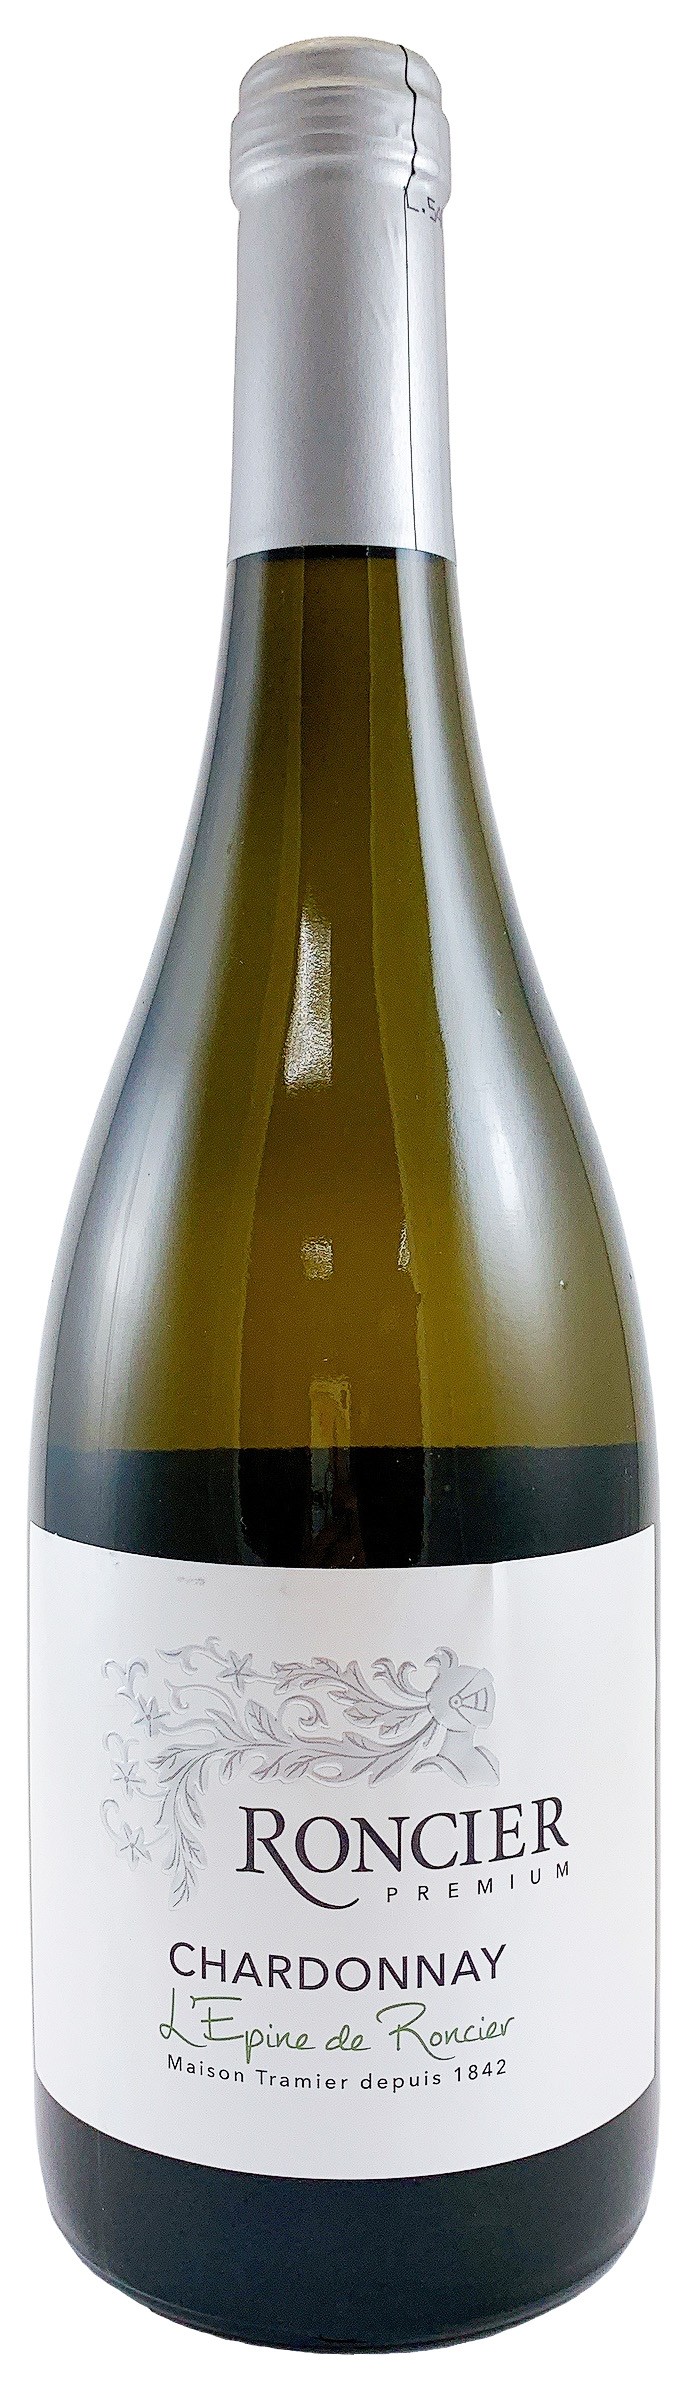 法國 勃艮地 羅希爾 優質夏多內白葡萄酒 2018